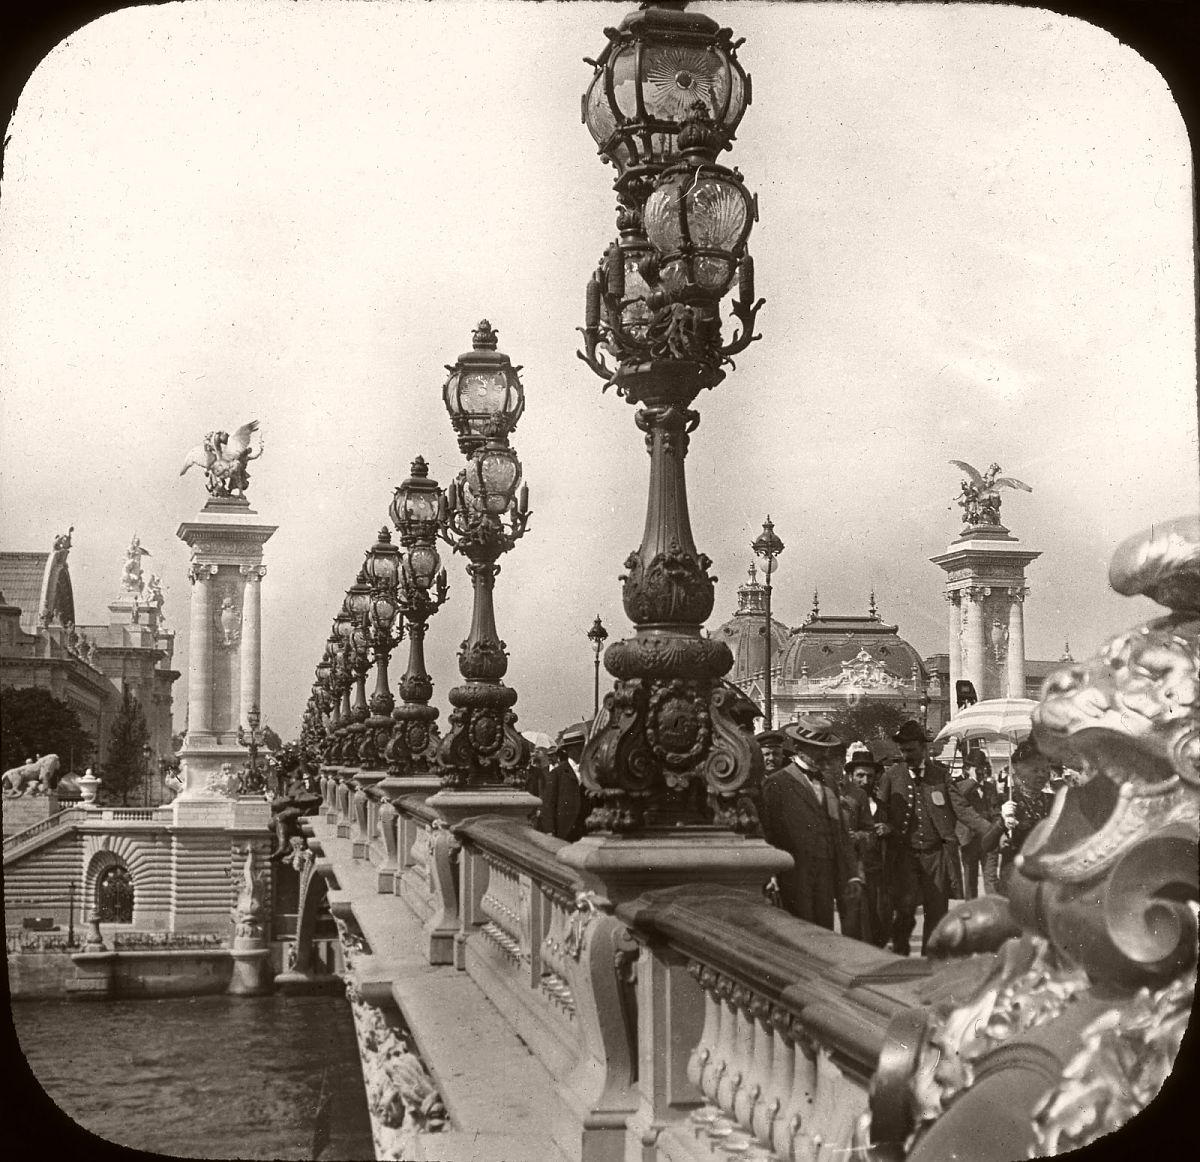 Vintage: Paris in the Belle Époque (1871 to 1914)